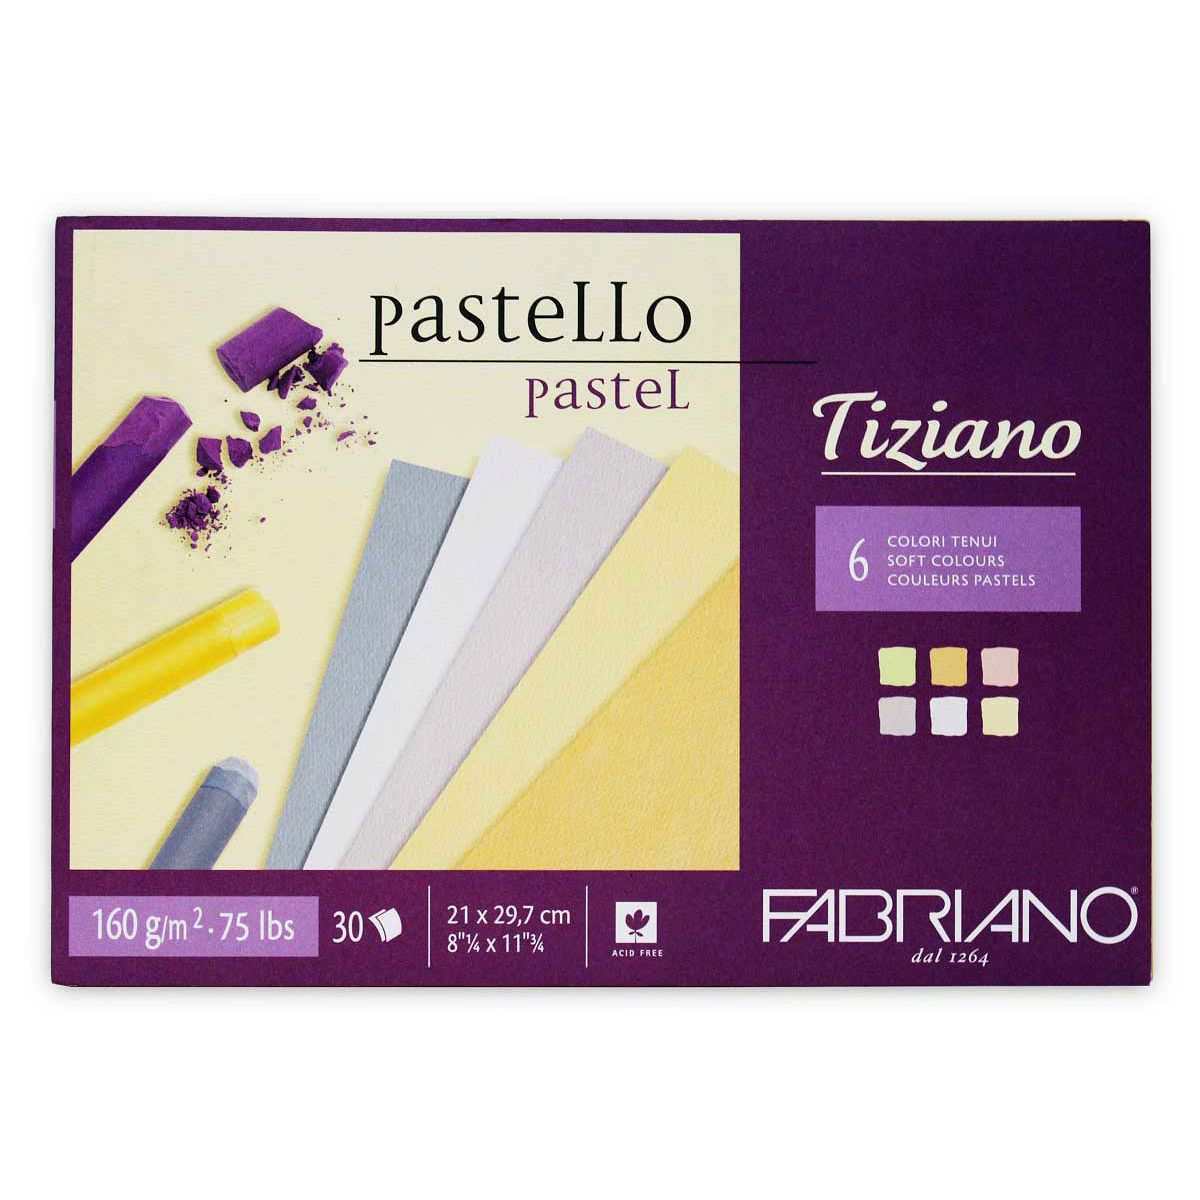 Fabriano Tiziano Pastel Pad (6 Soft Colours) 8